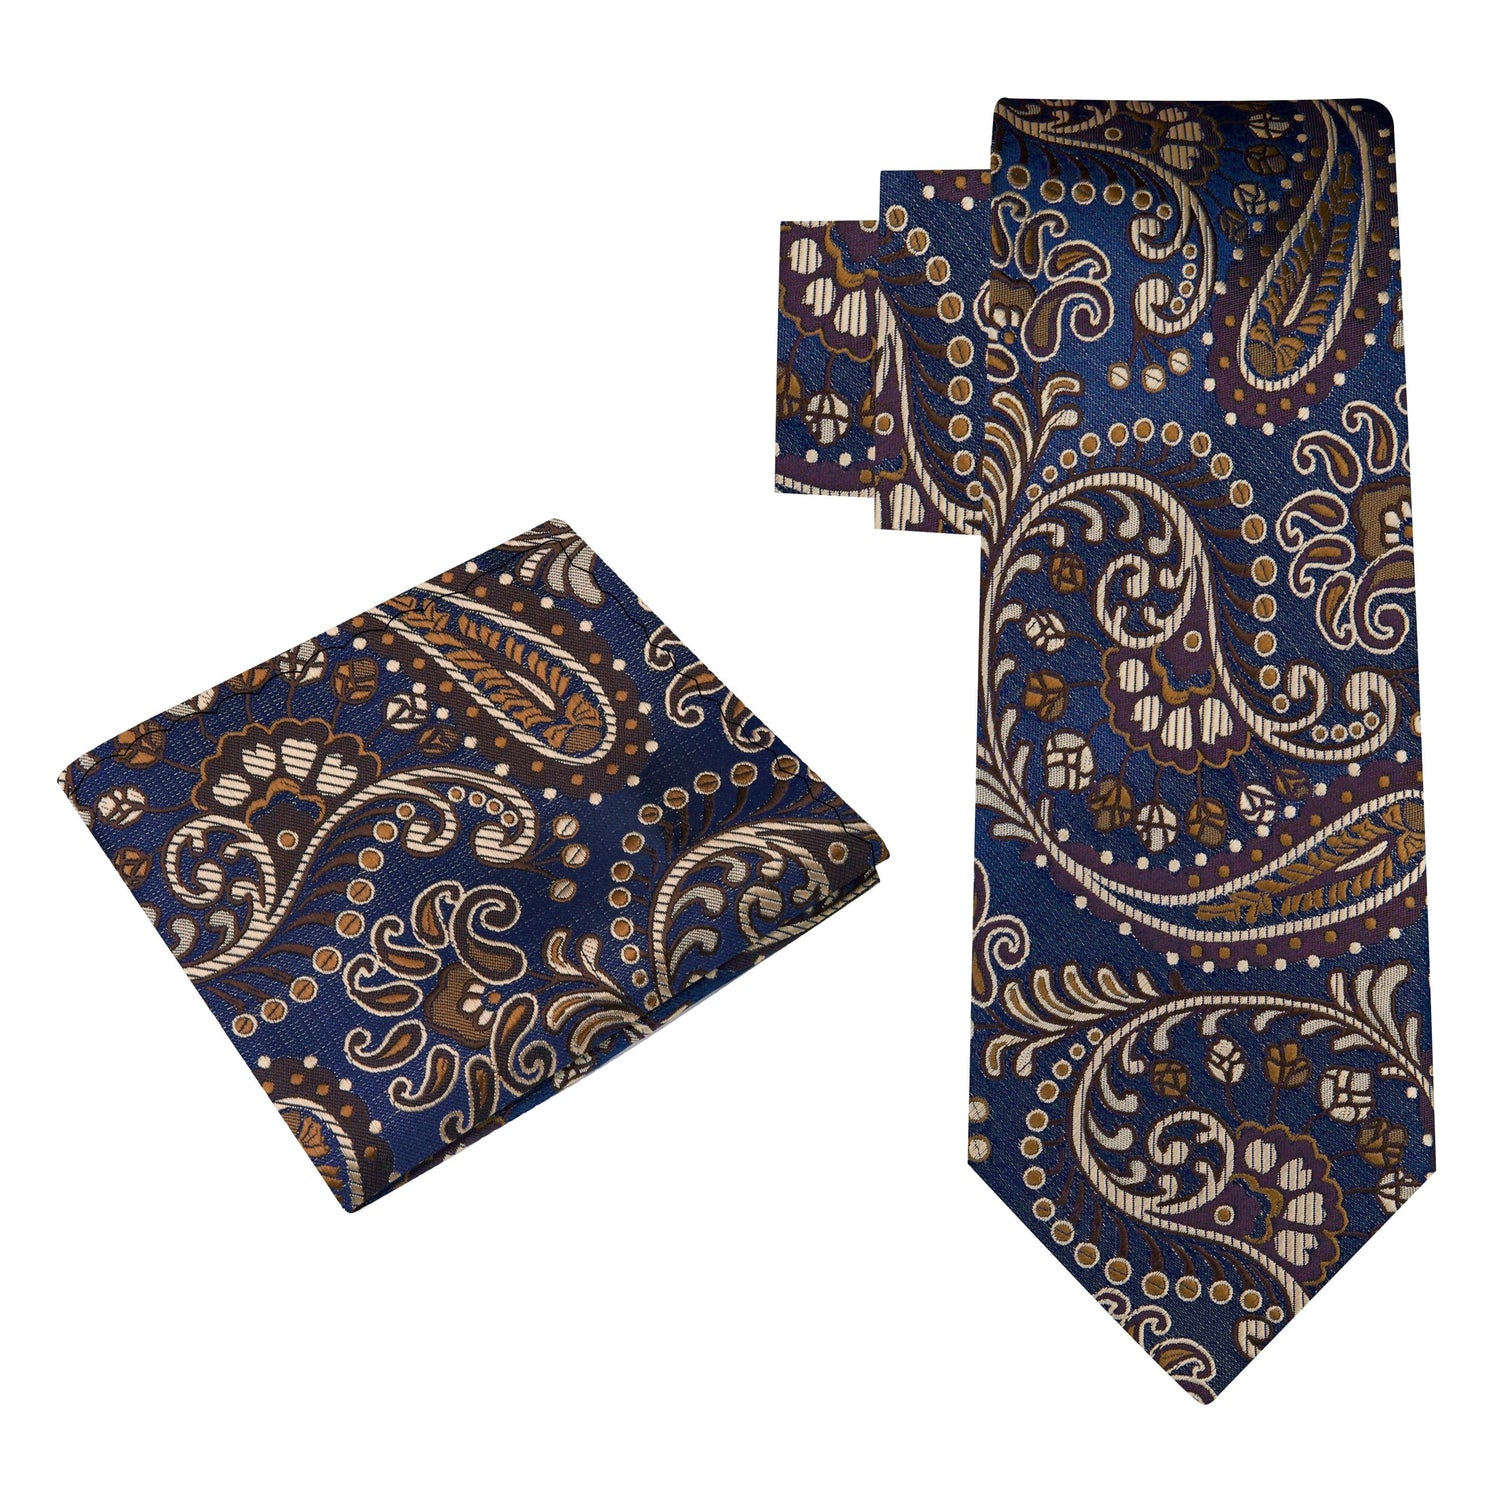 Alt View: A Dark Blue, Brown Paisley Pattern Silk Necktie, Matching Pocket Square